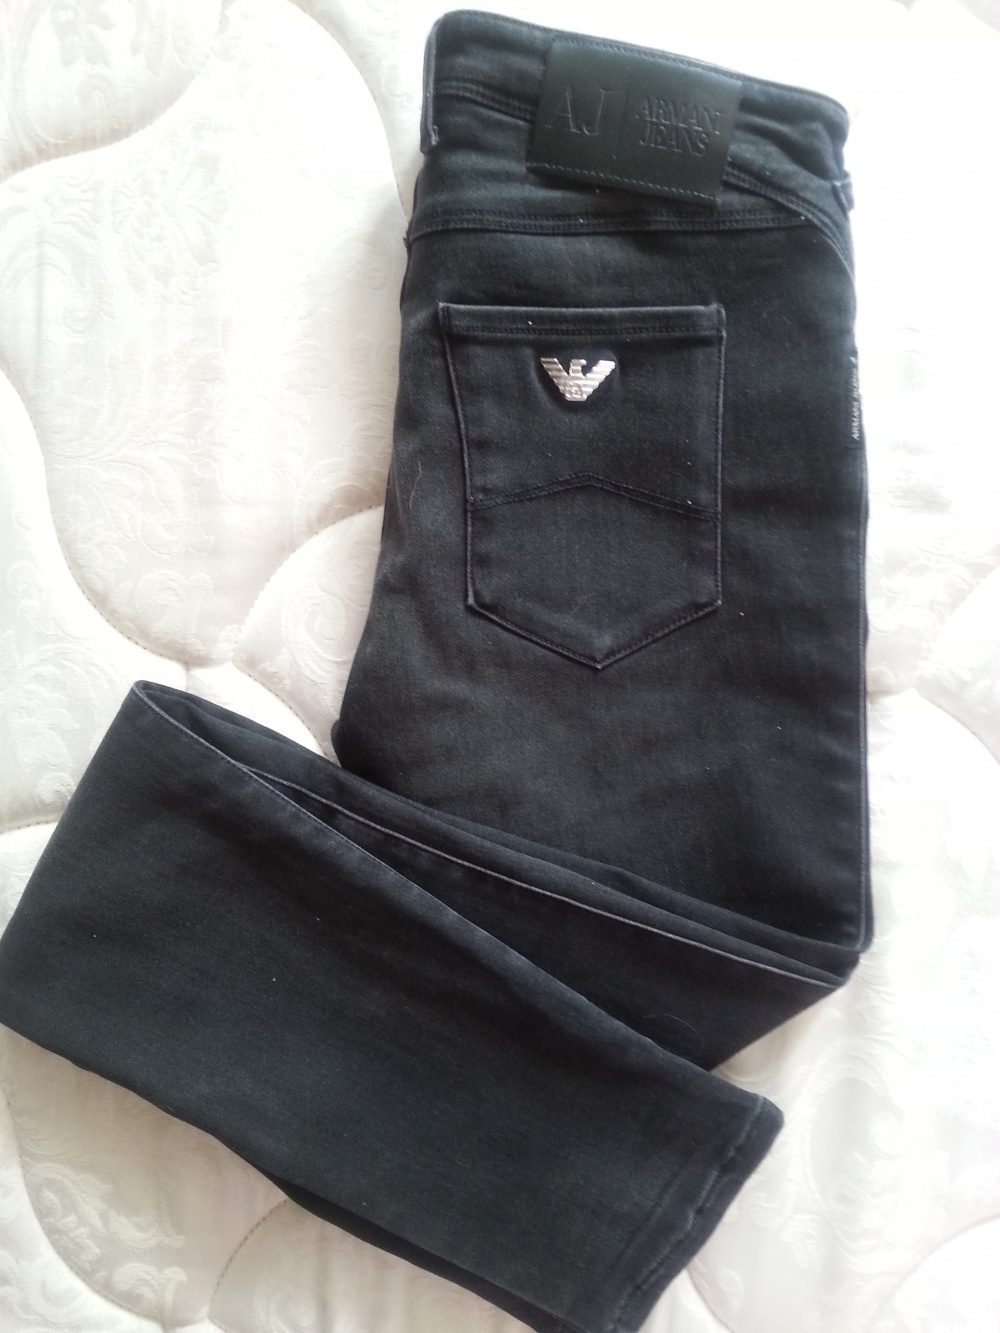 Джинсы Armani jeans размер 27